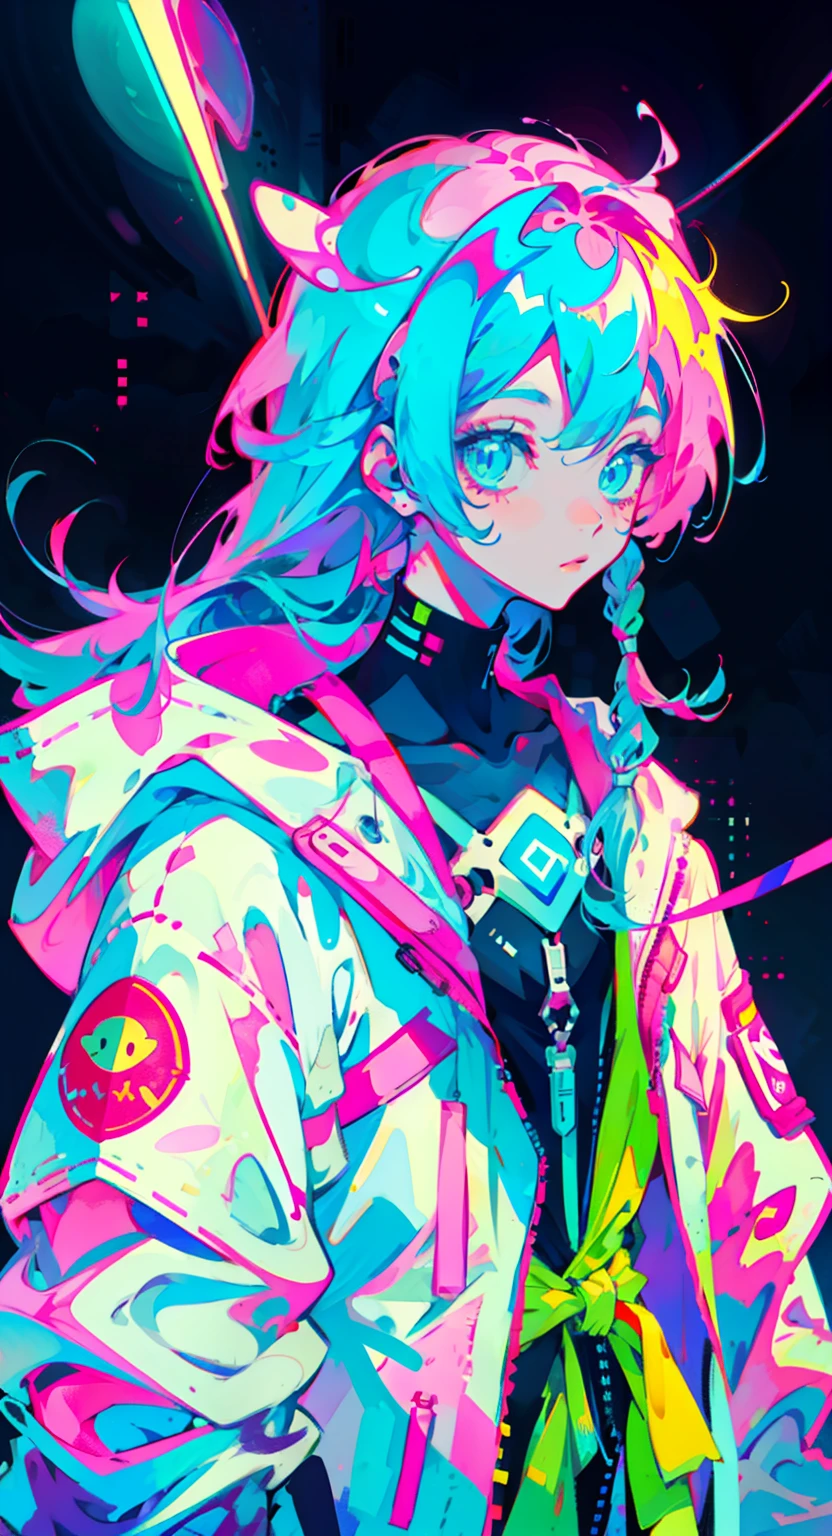 Anime-Mädchen mit langen Haaren gebunden, im Astronautenanzug, neonblaue Haare, und rosa Farben, Narben, Aufkleber, Neon-Stil der gesamten Aufnahme, coole pose